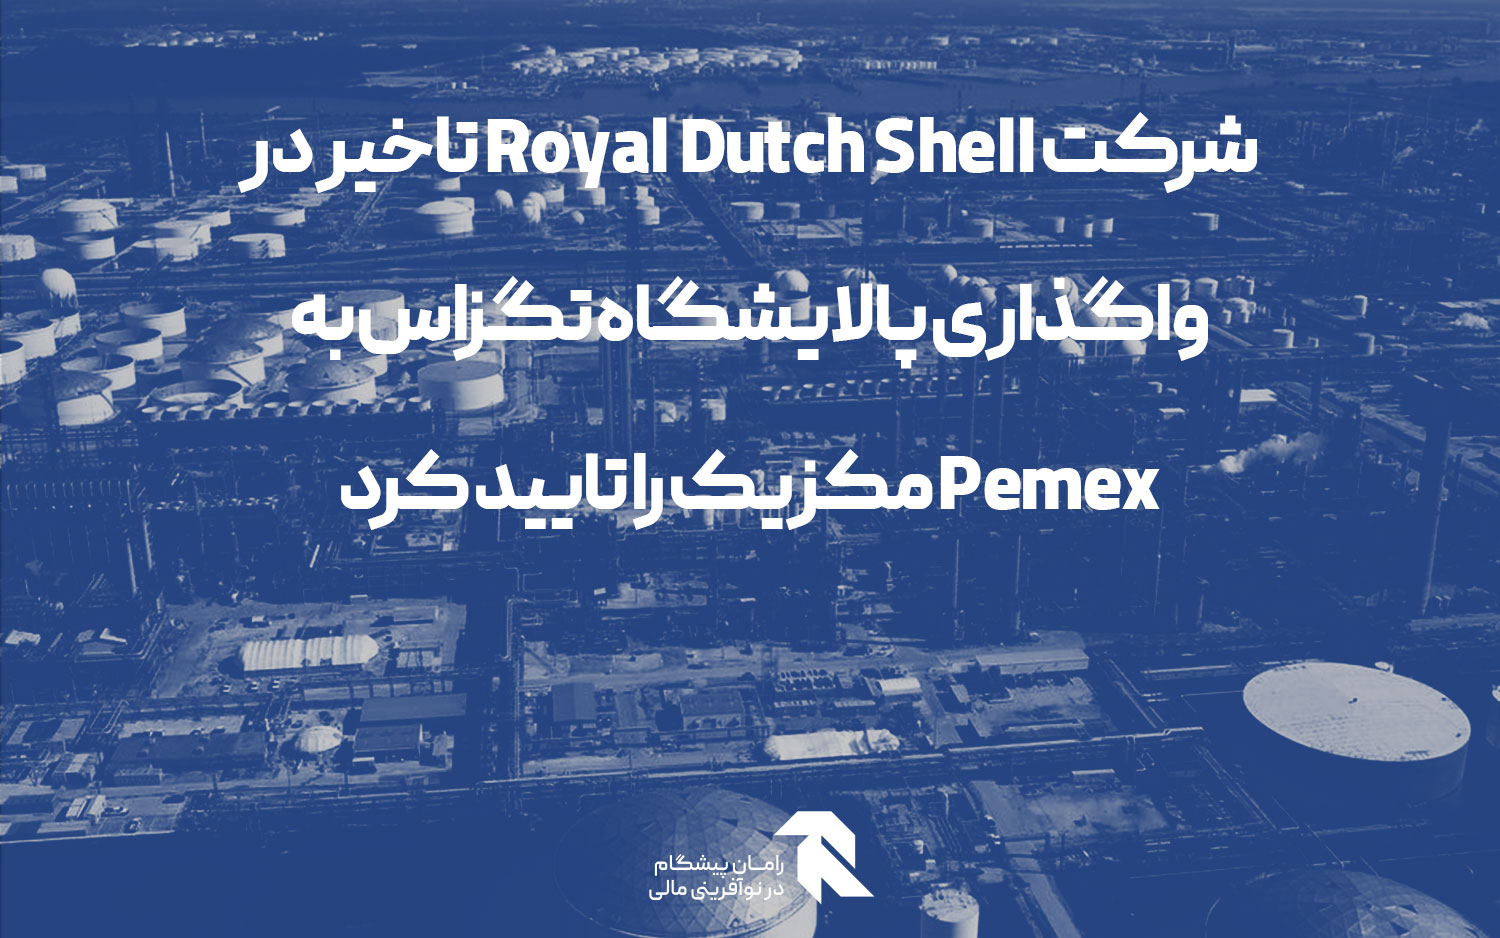 شرکت Royal Dutch Shell تاخیر در واگذاری پالایشگاه تگزاس به Pemex مکزیک را تایید کرد